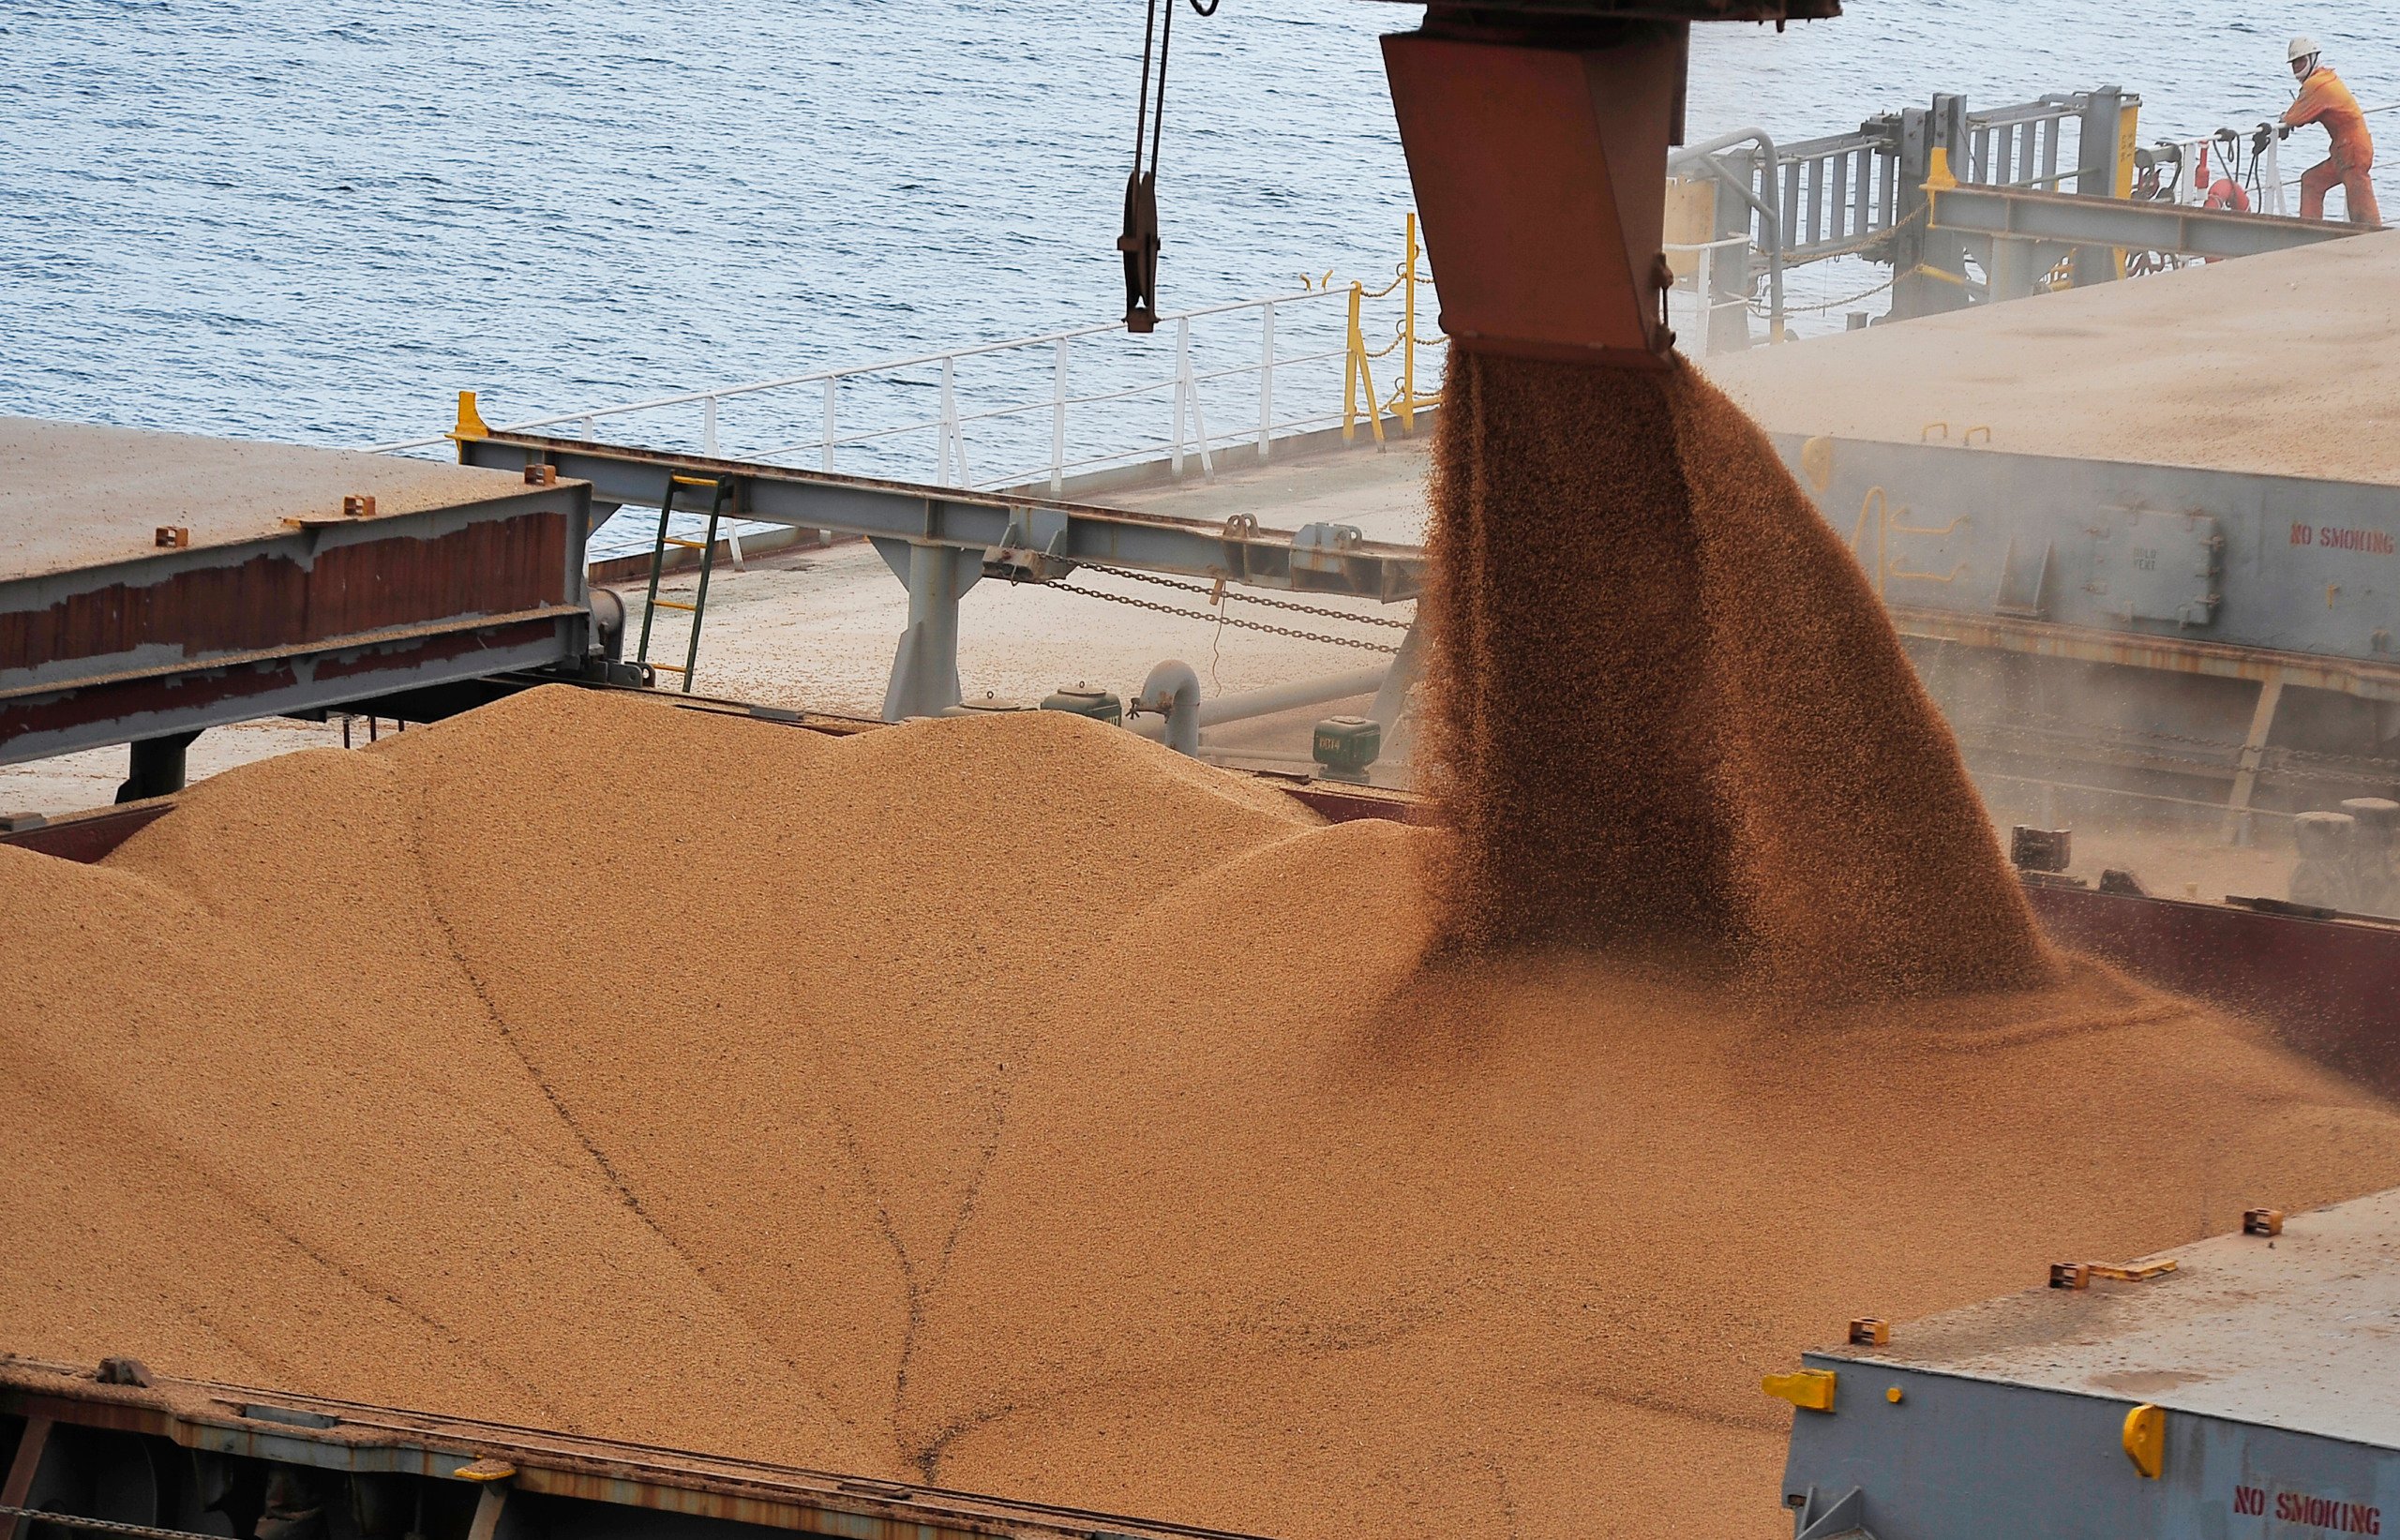 Navio sendo carregado de soja em grãos no Porto de Paranaguá